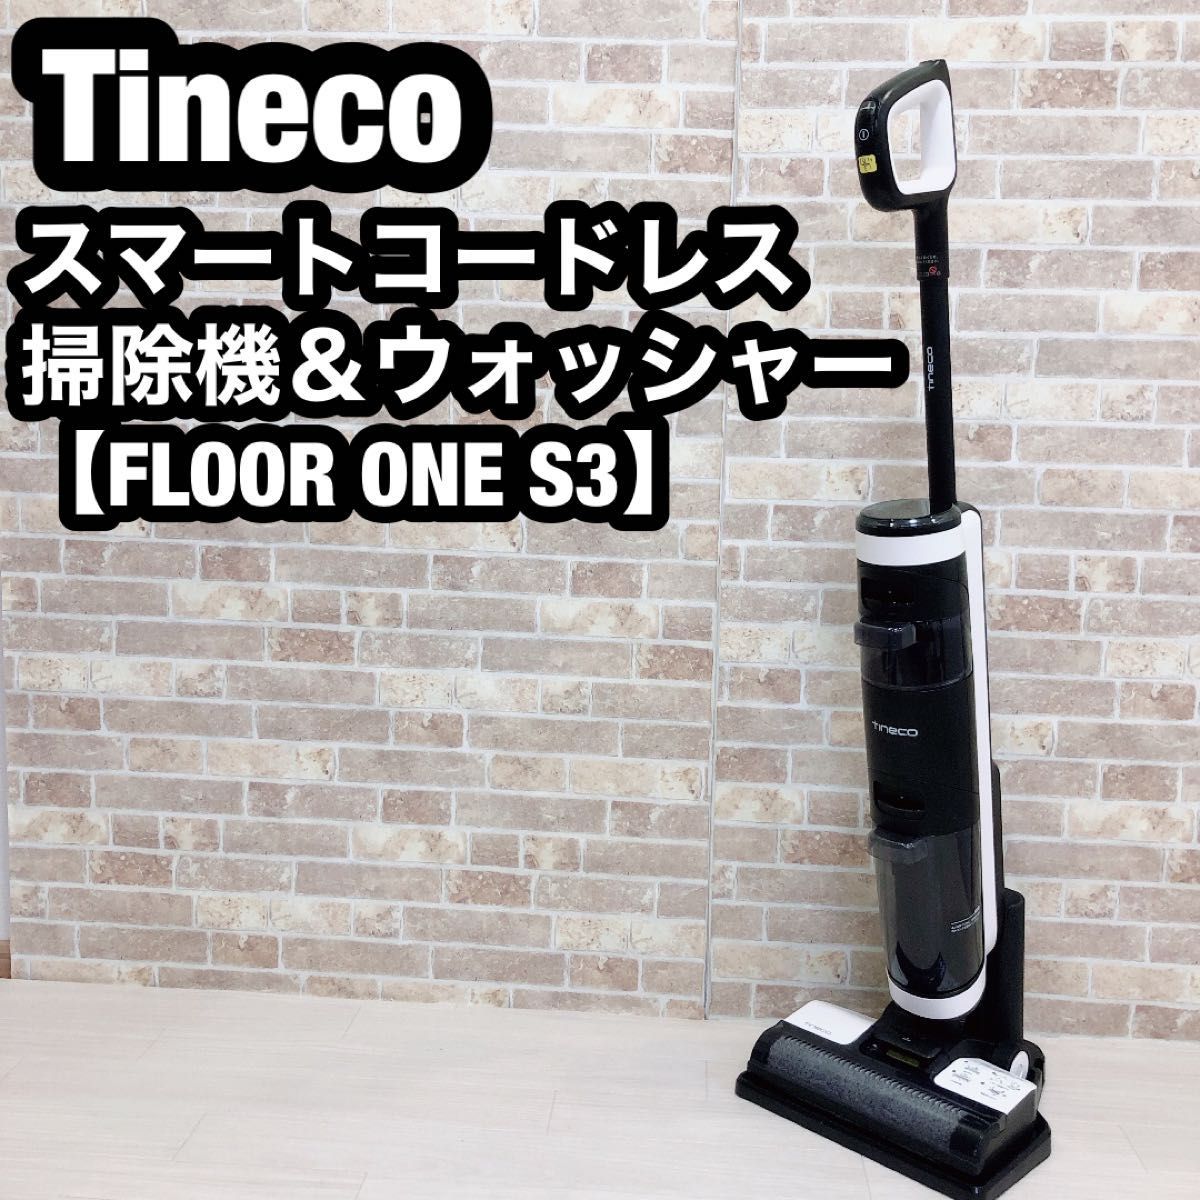 海外販売× Tinecoスマートコードレス掃除機＆ウォッシャー【FLOOR ONE